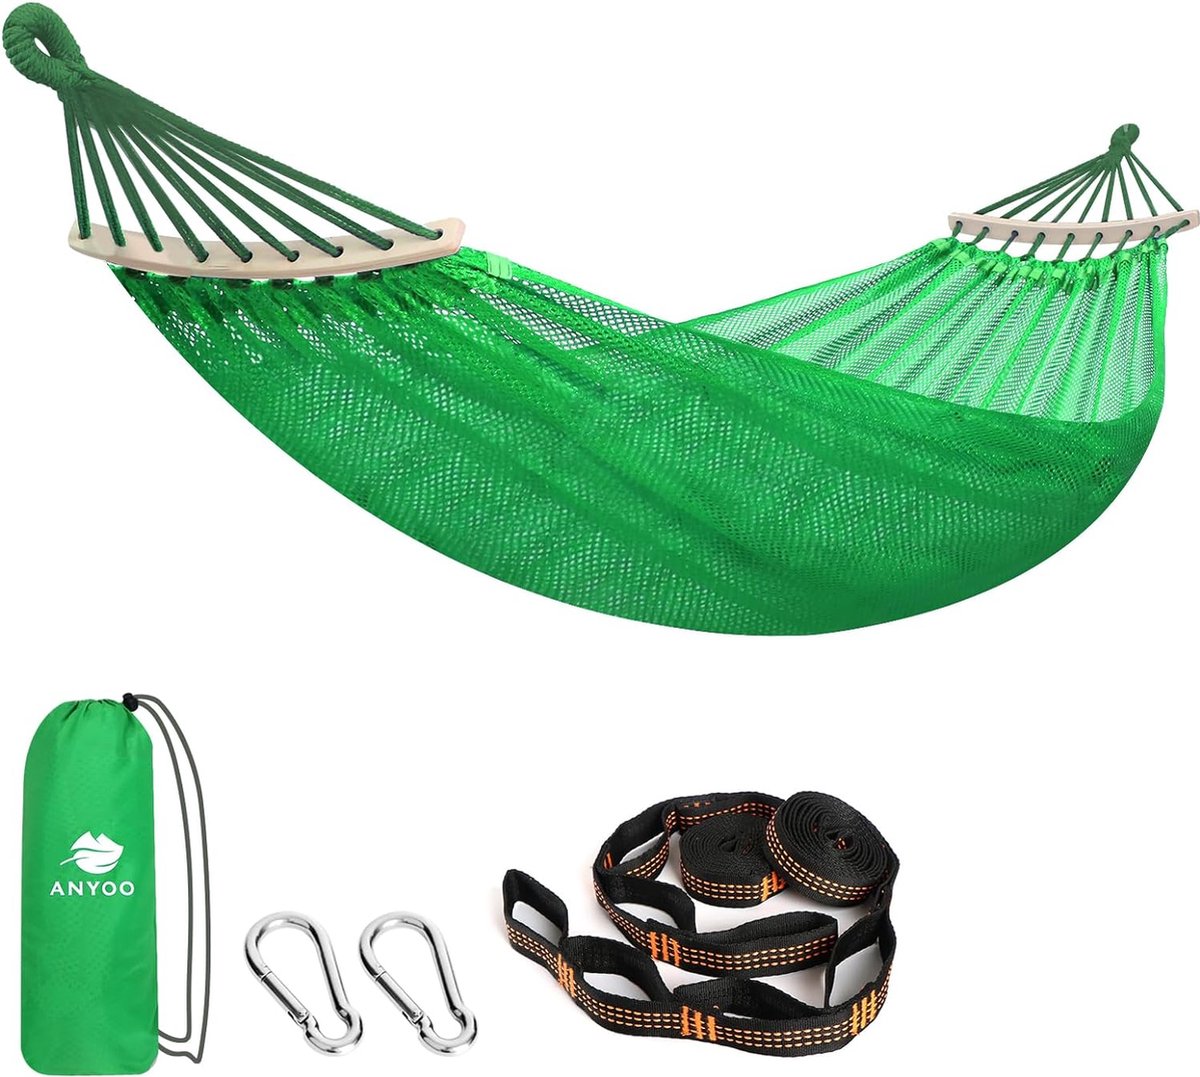 Hangmat net met spreidstangen, ademend koelnet, staafhangmat met boomriemen voor outdoor/binnen, tuin, balkon, patio, achtertuin, camping (4801288651658)